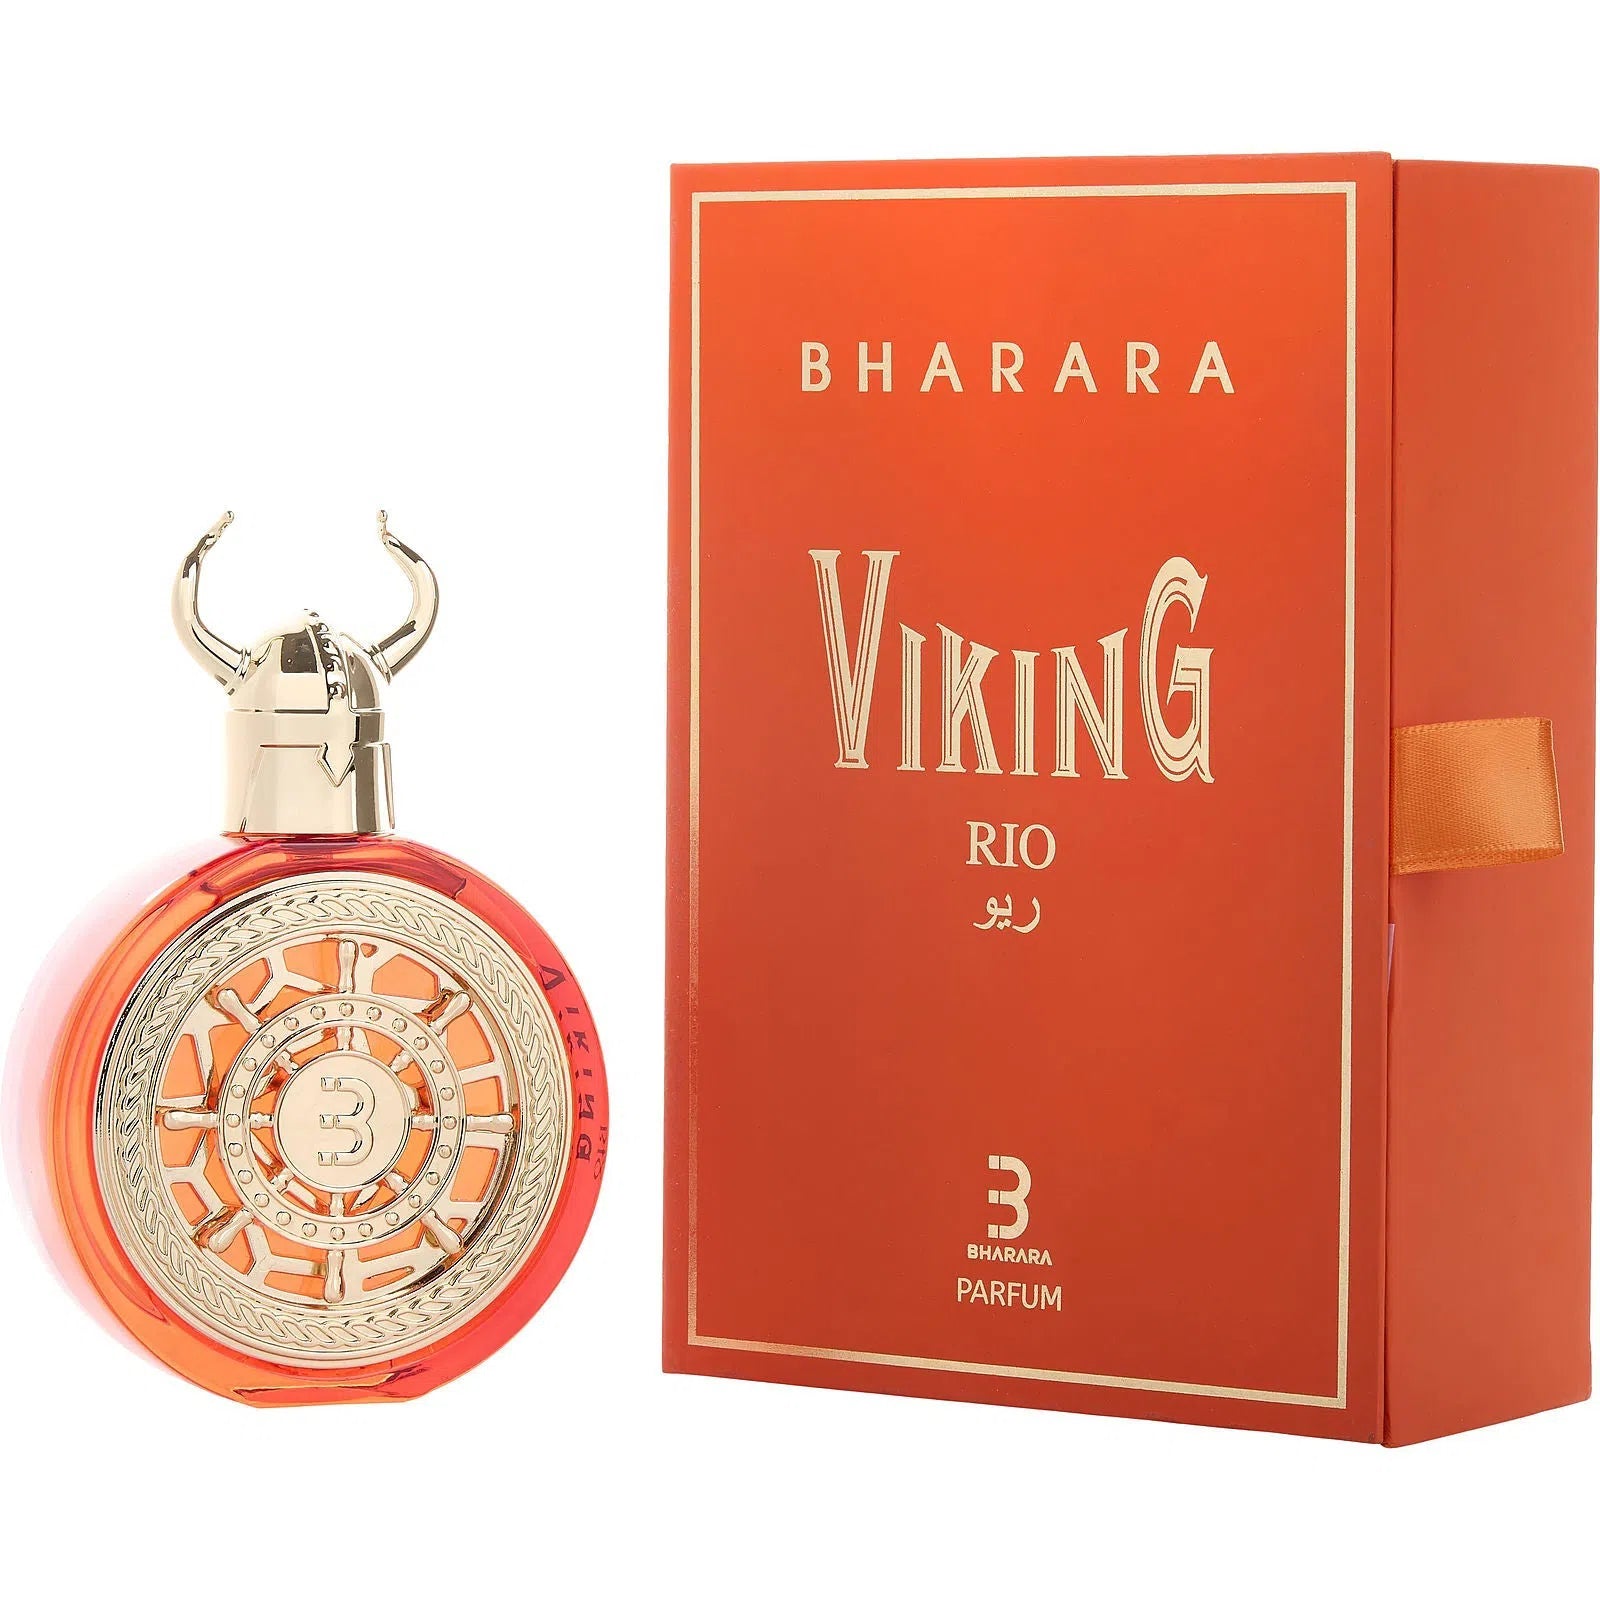 Perfume Bharara Viking Rio Parfum (U) / 100 ml - 850050062219- Prive Perfumes Honduras